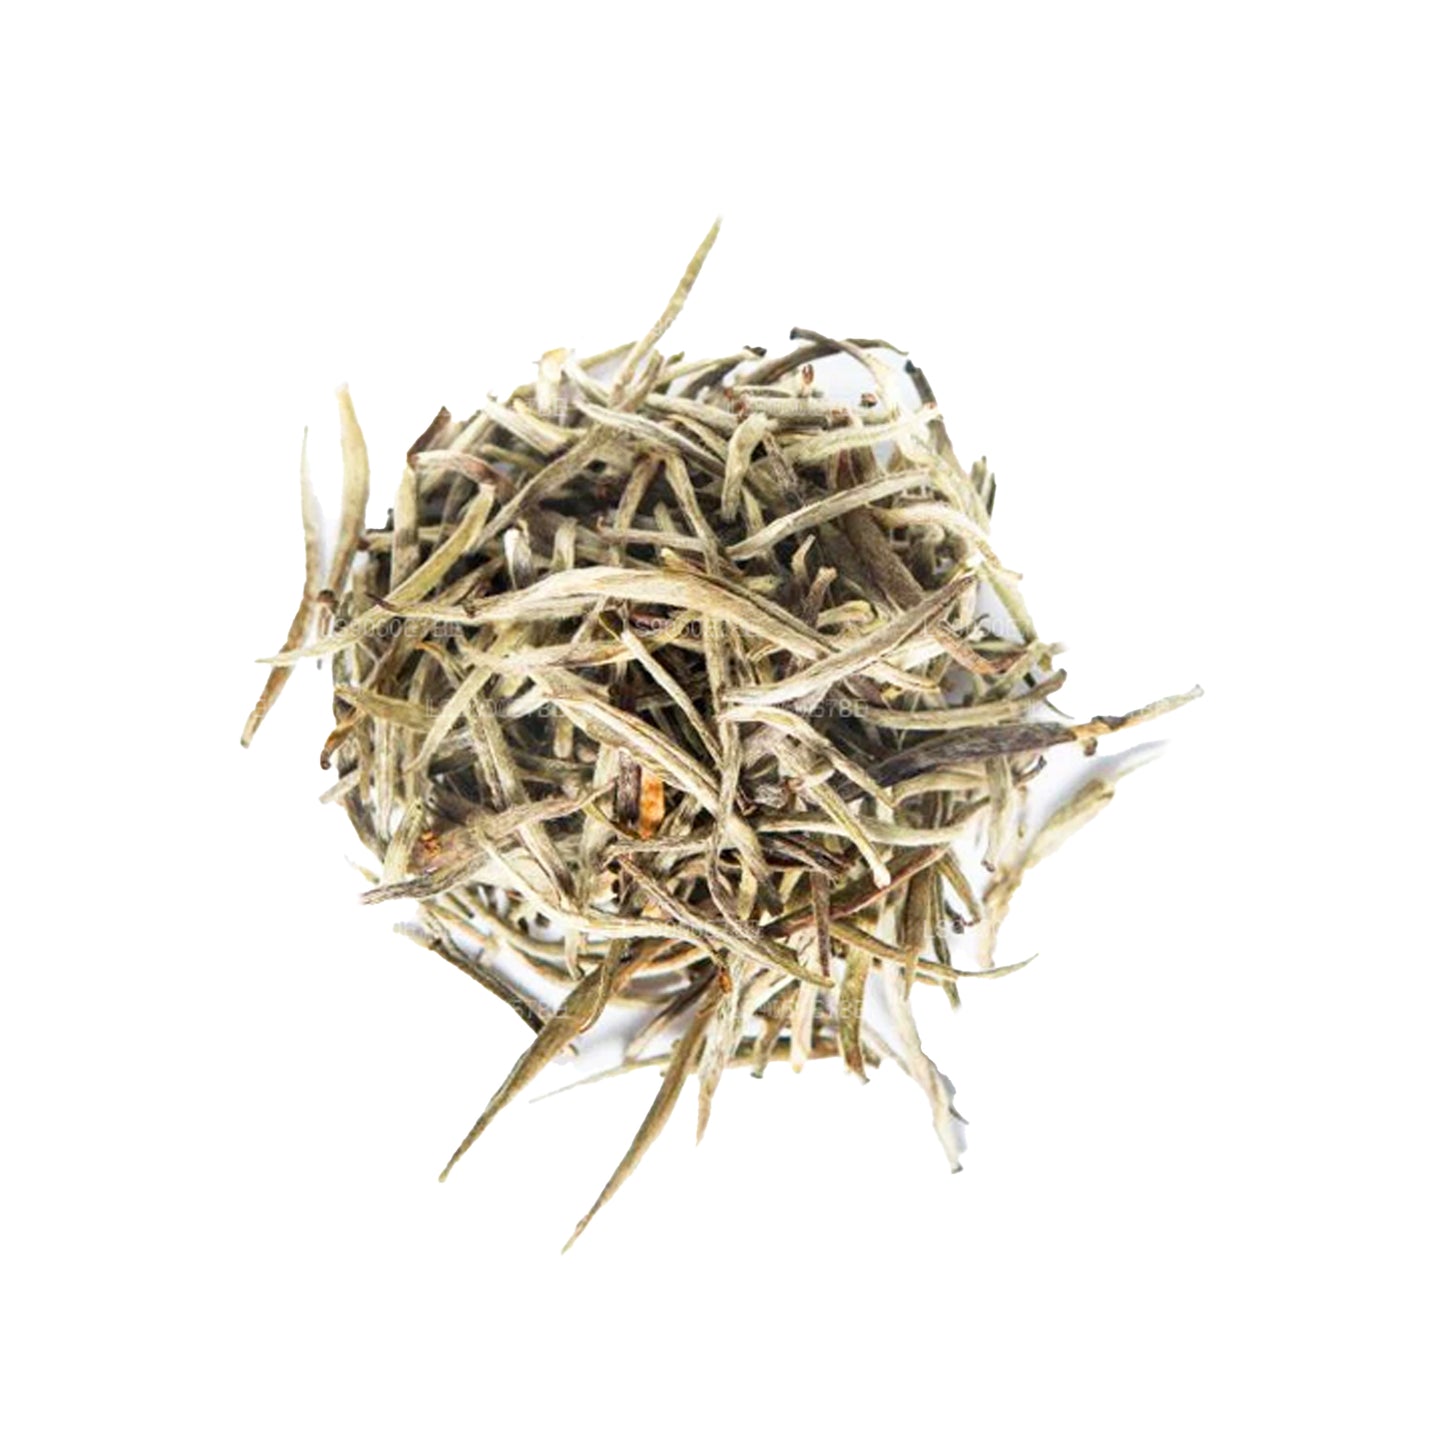 Белый чай Dilmah с цейлонскими серебряными наконечниками (40 г) Рассыпной чай Caddy